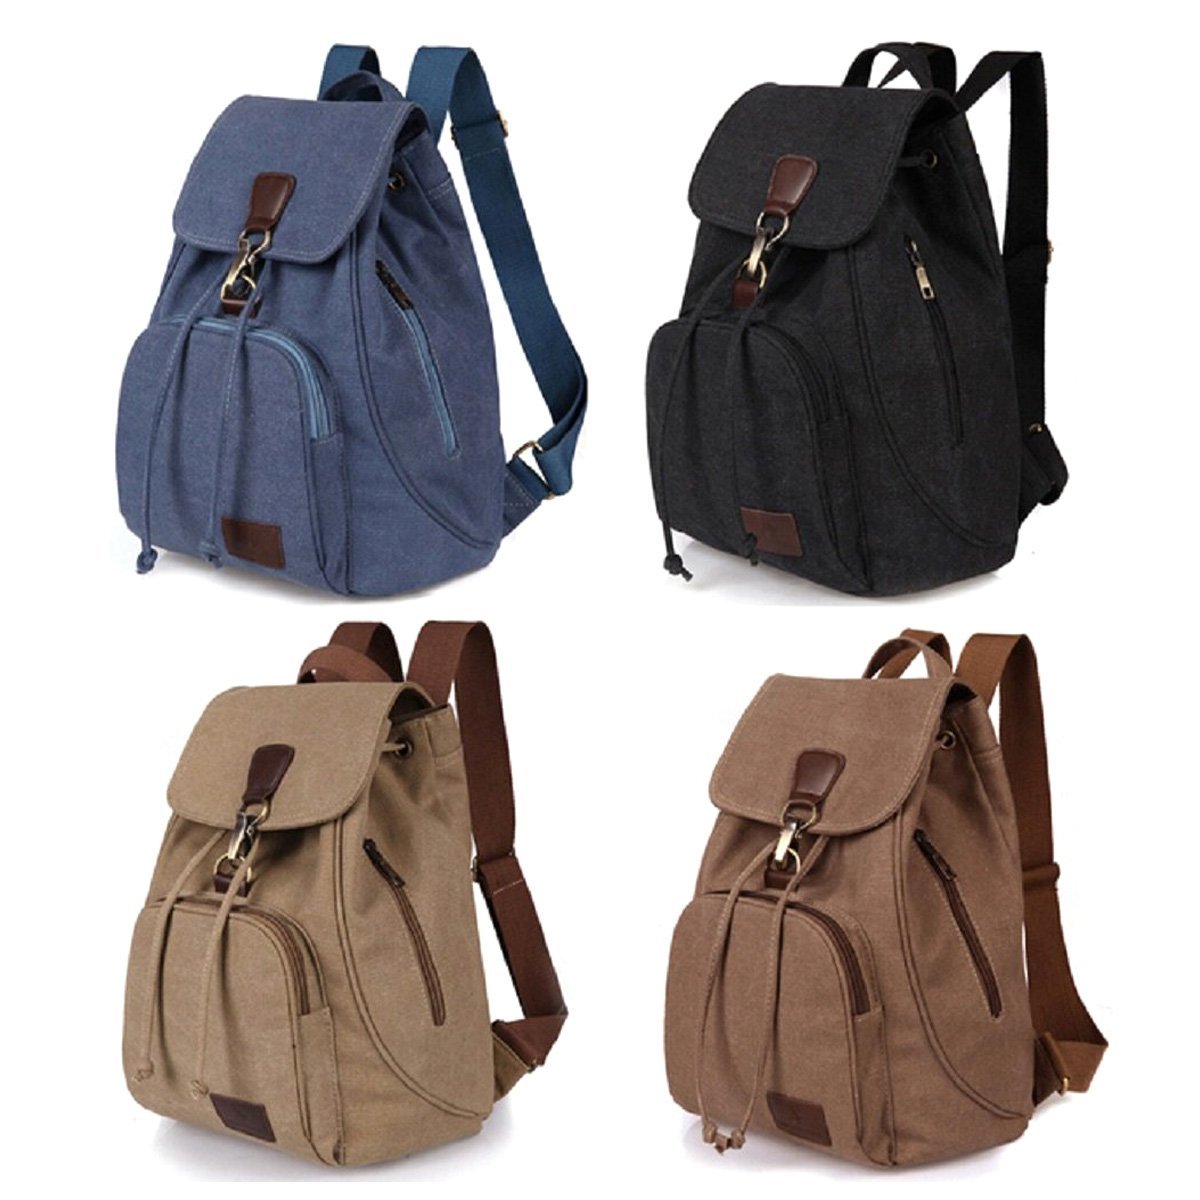 9 best backpacks